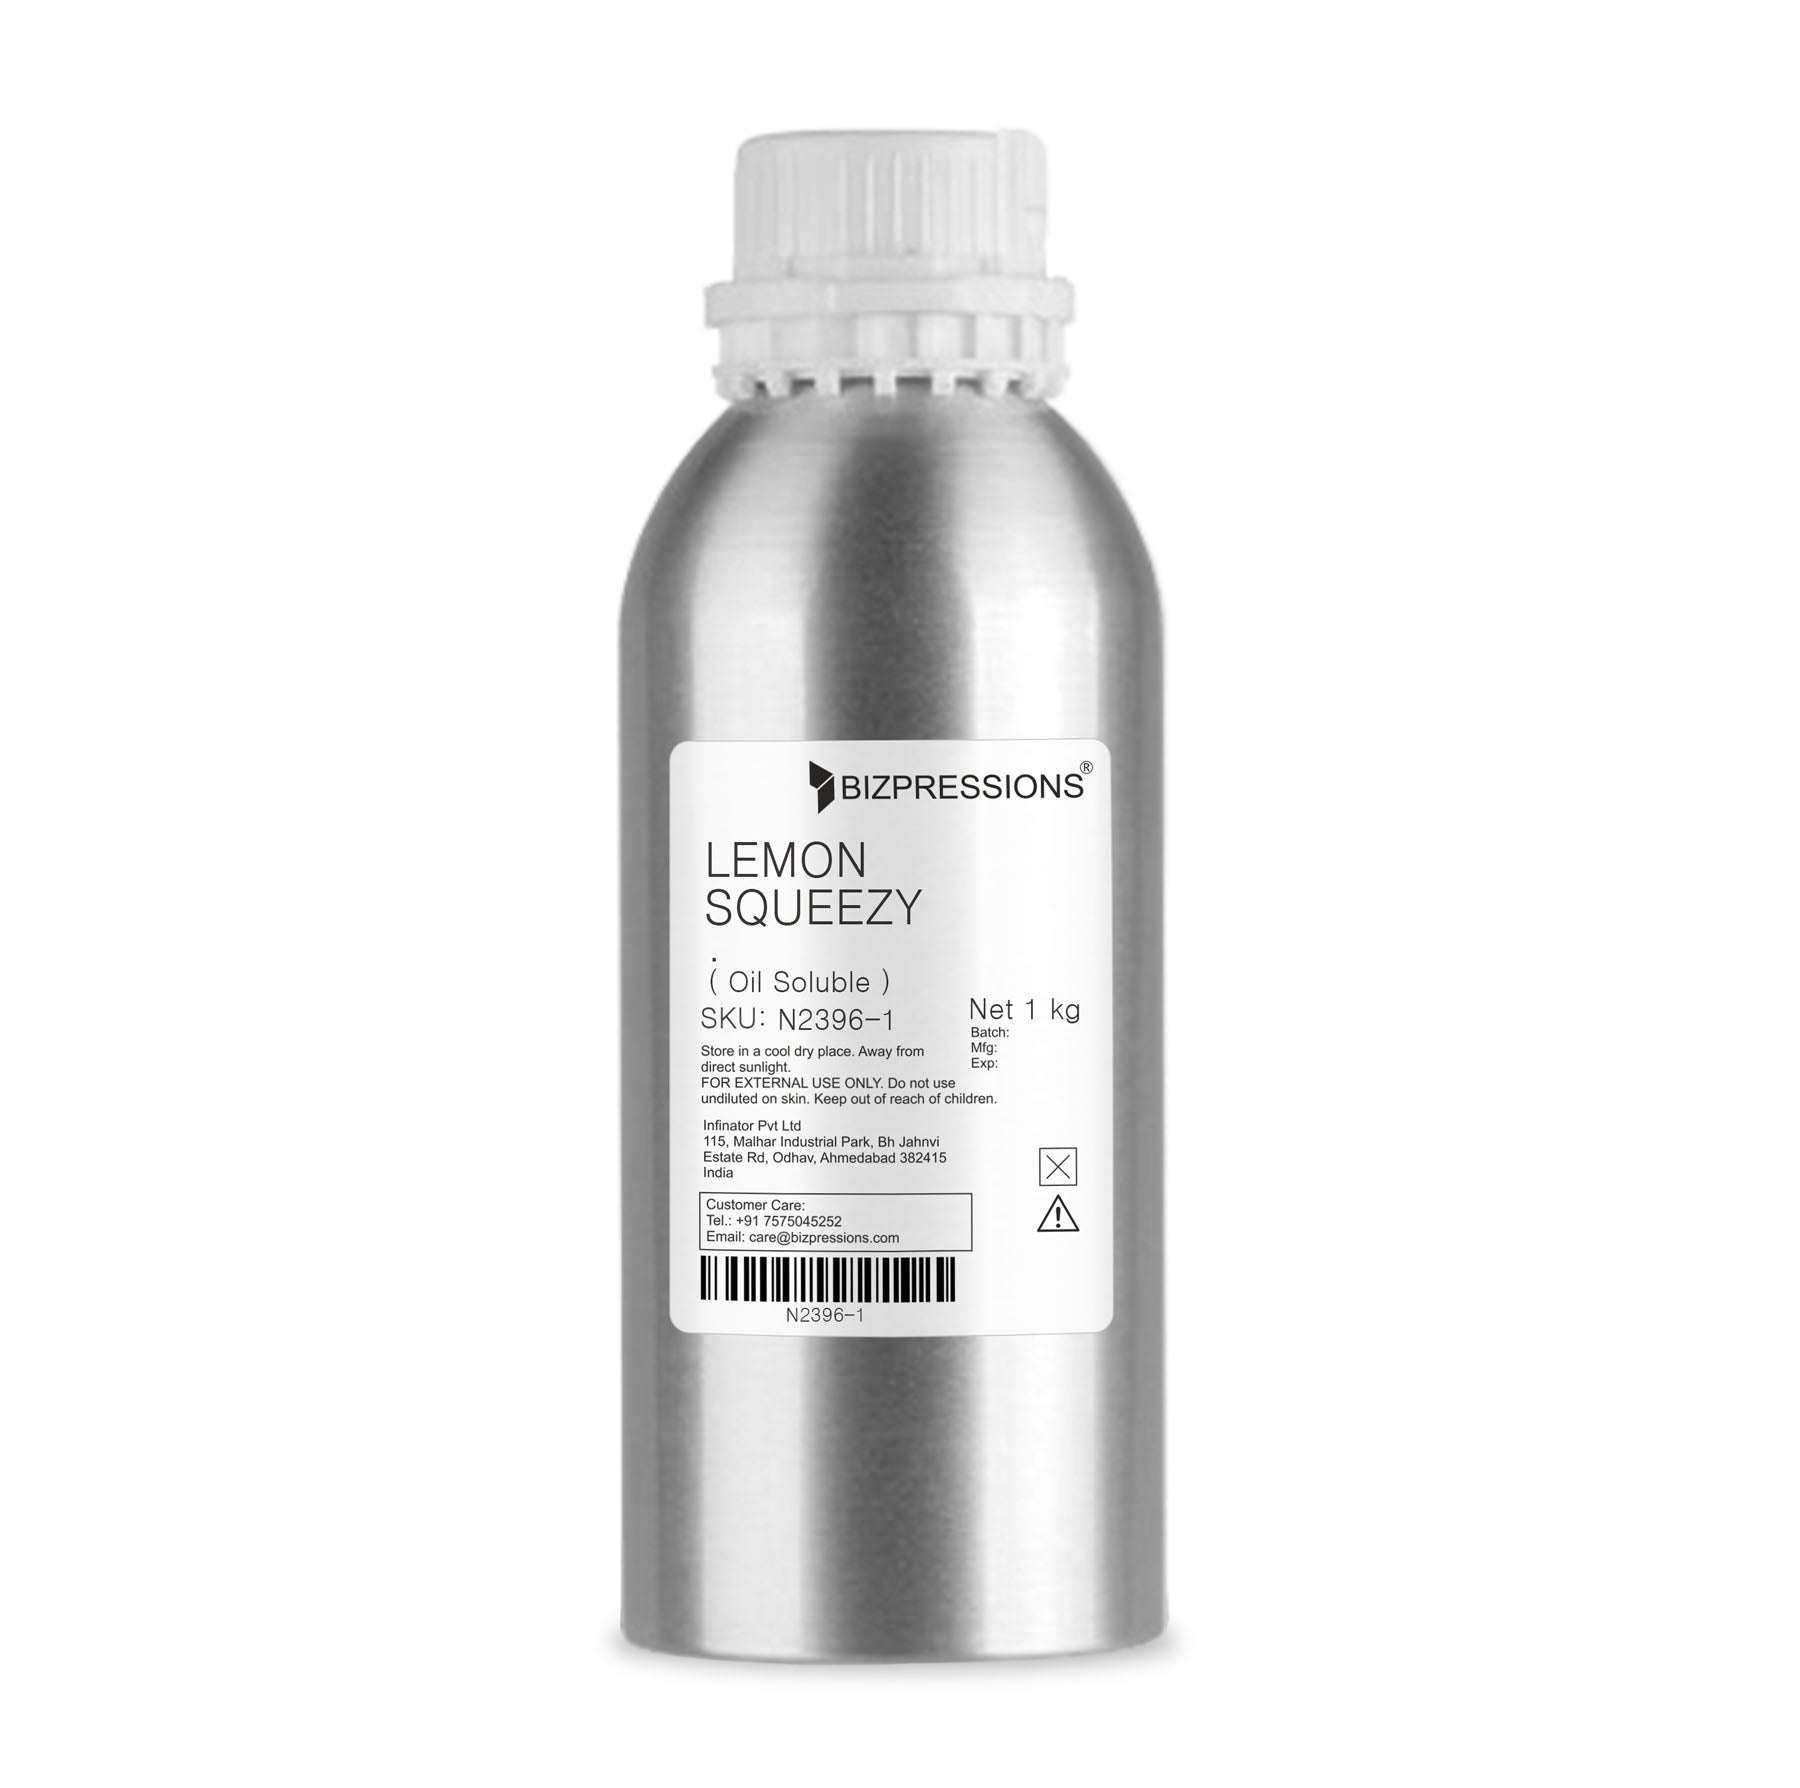 LEMON SQUEEZY - Fragrance ( Oil Soluble ) - 1 kg